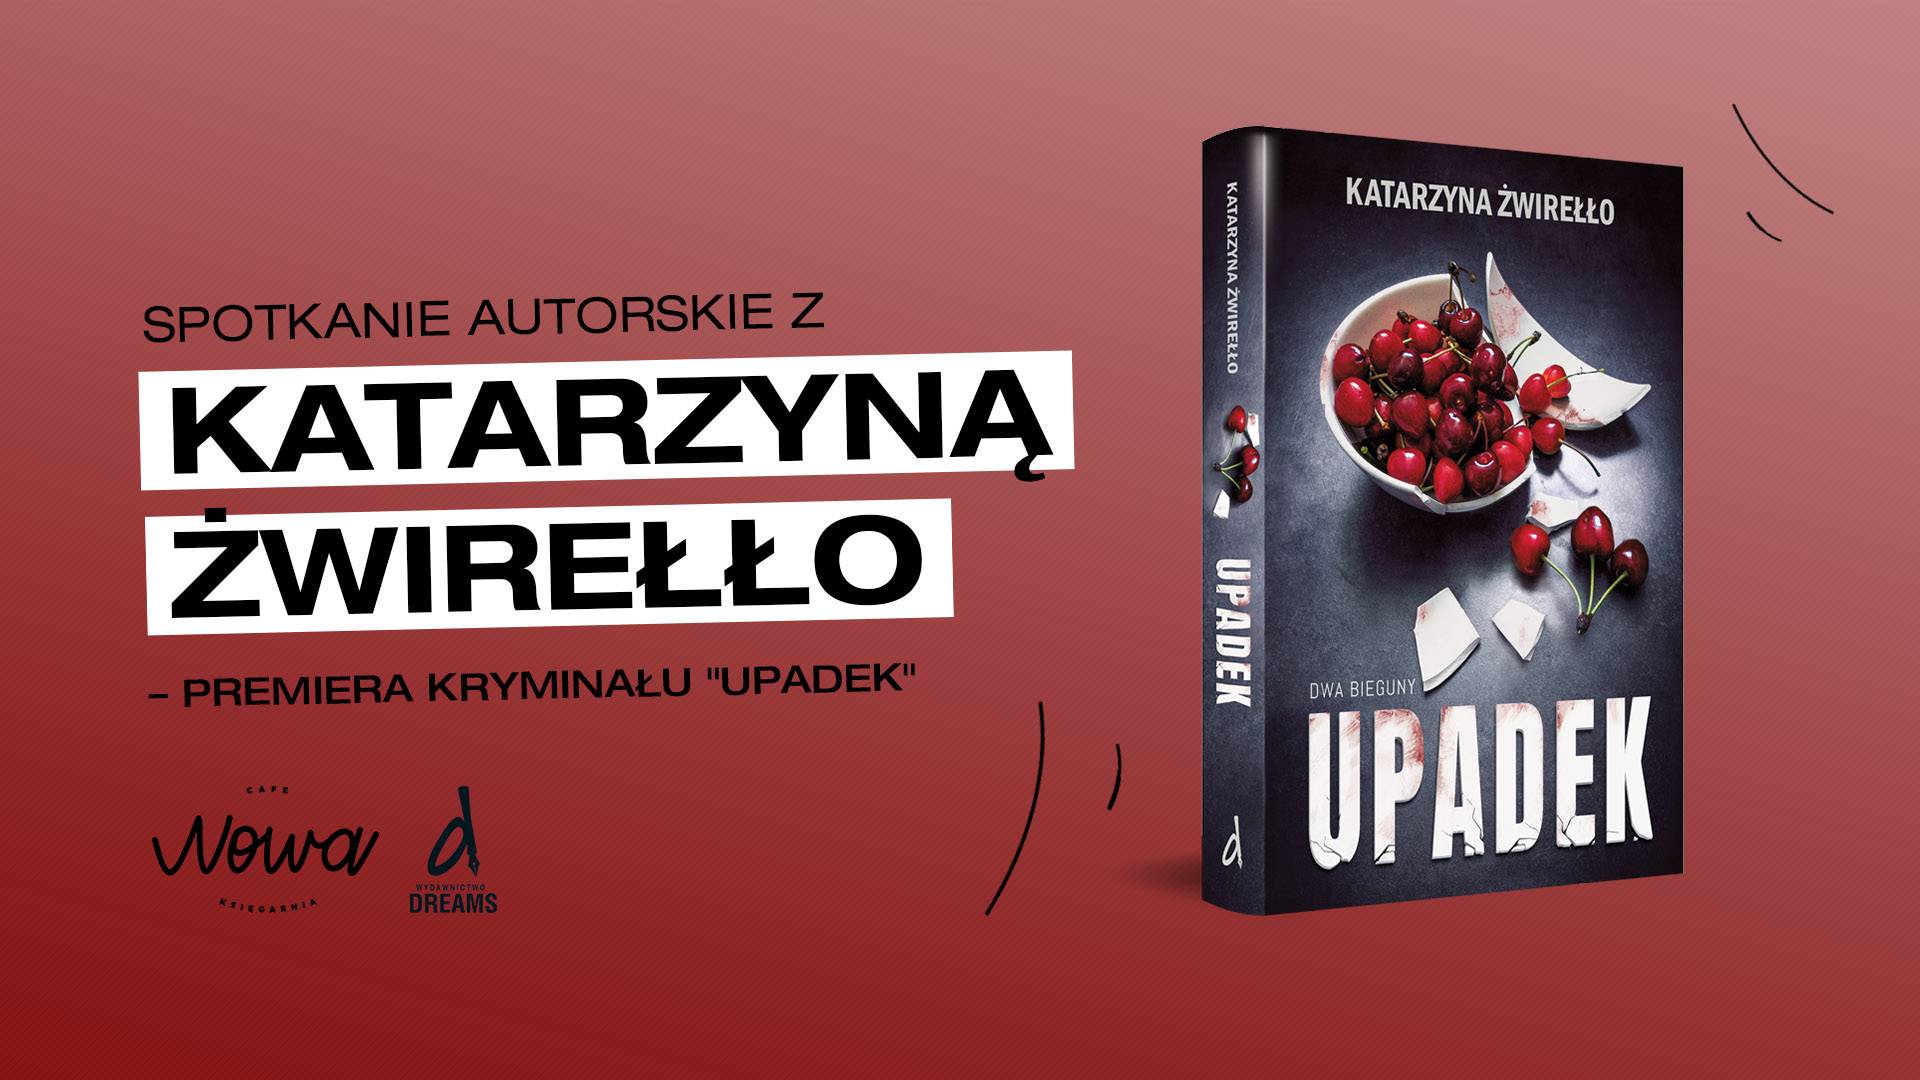 Spotkanie autorskie z Katarzyną Żwirełło – premiera książki "Upadek"